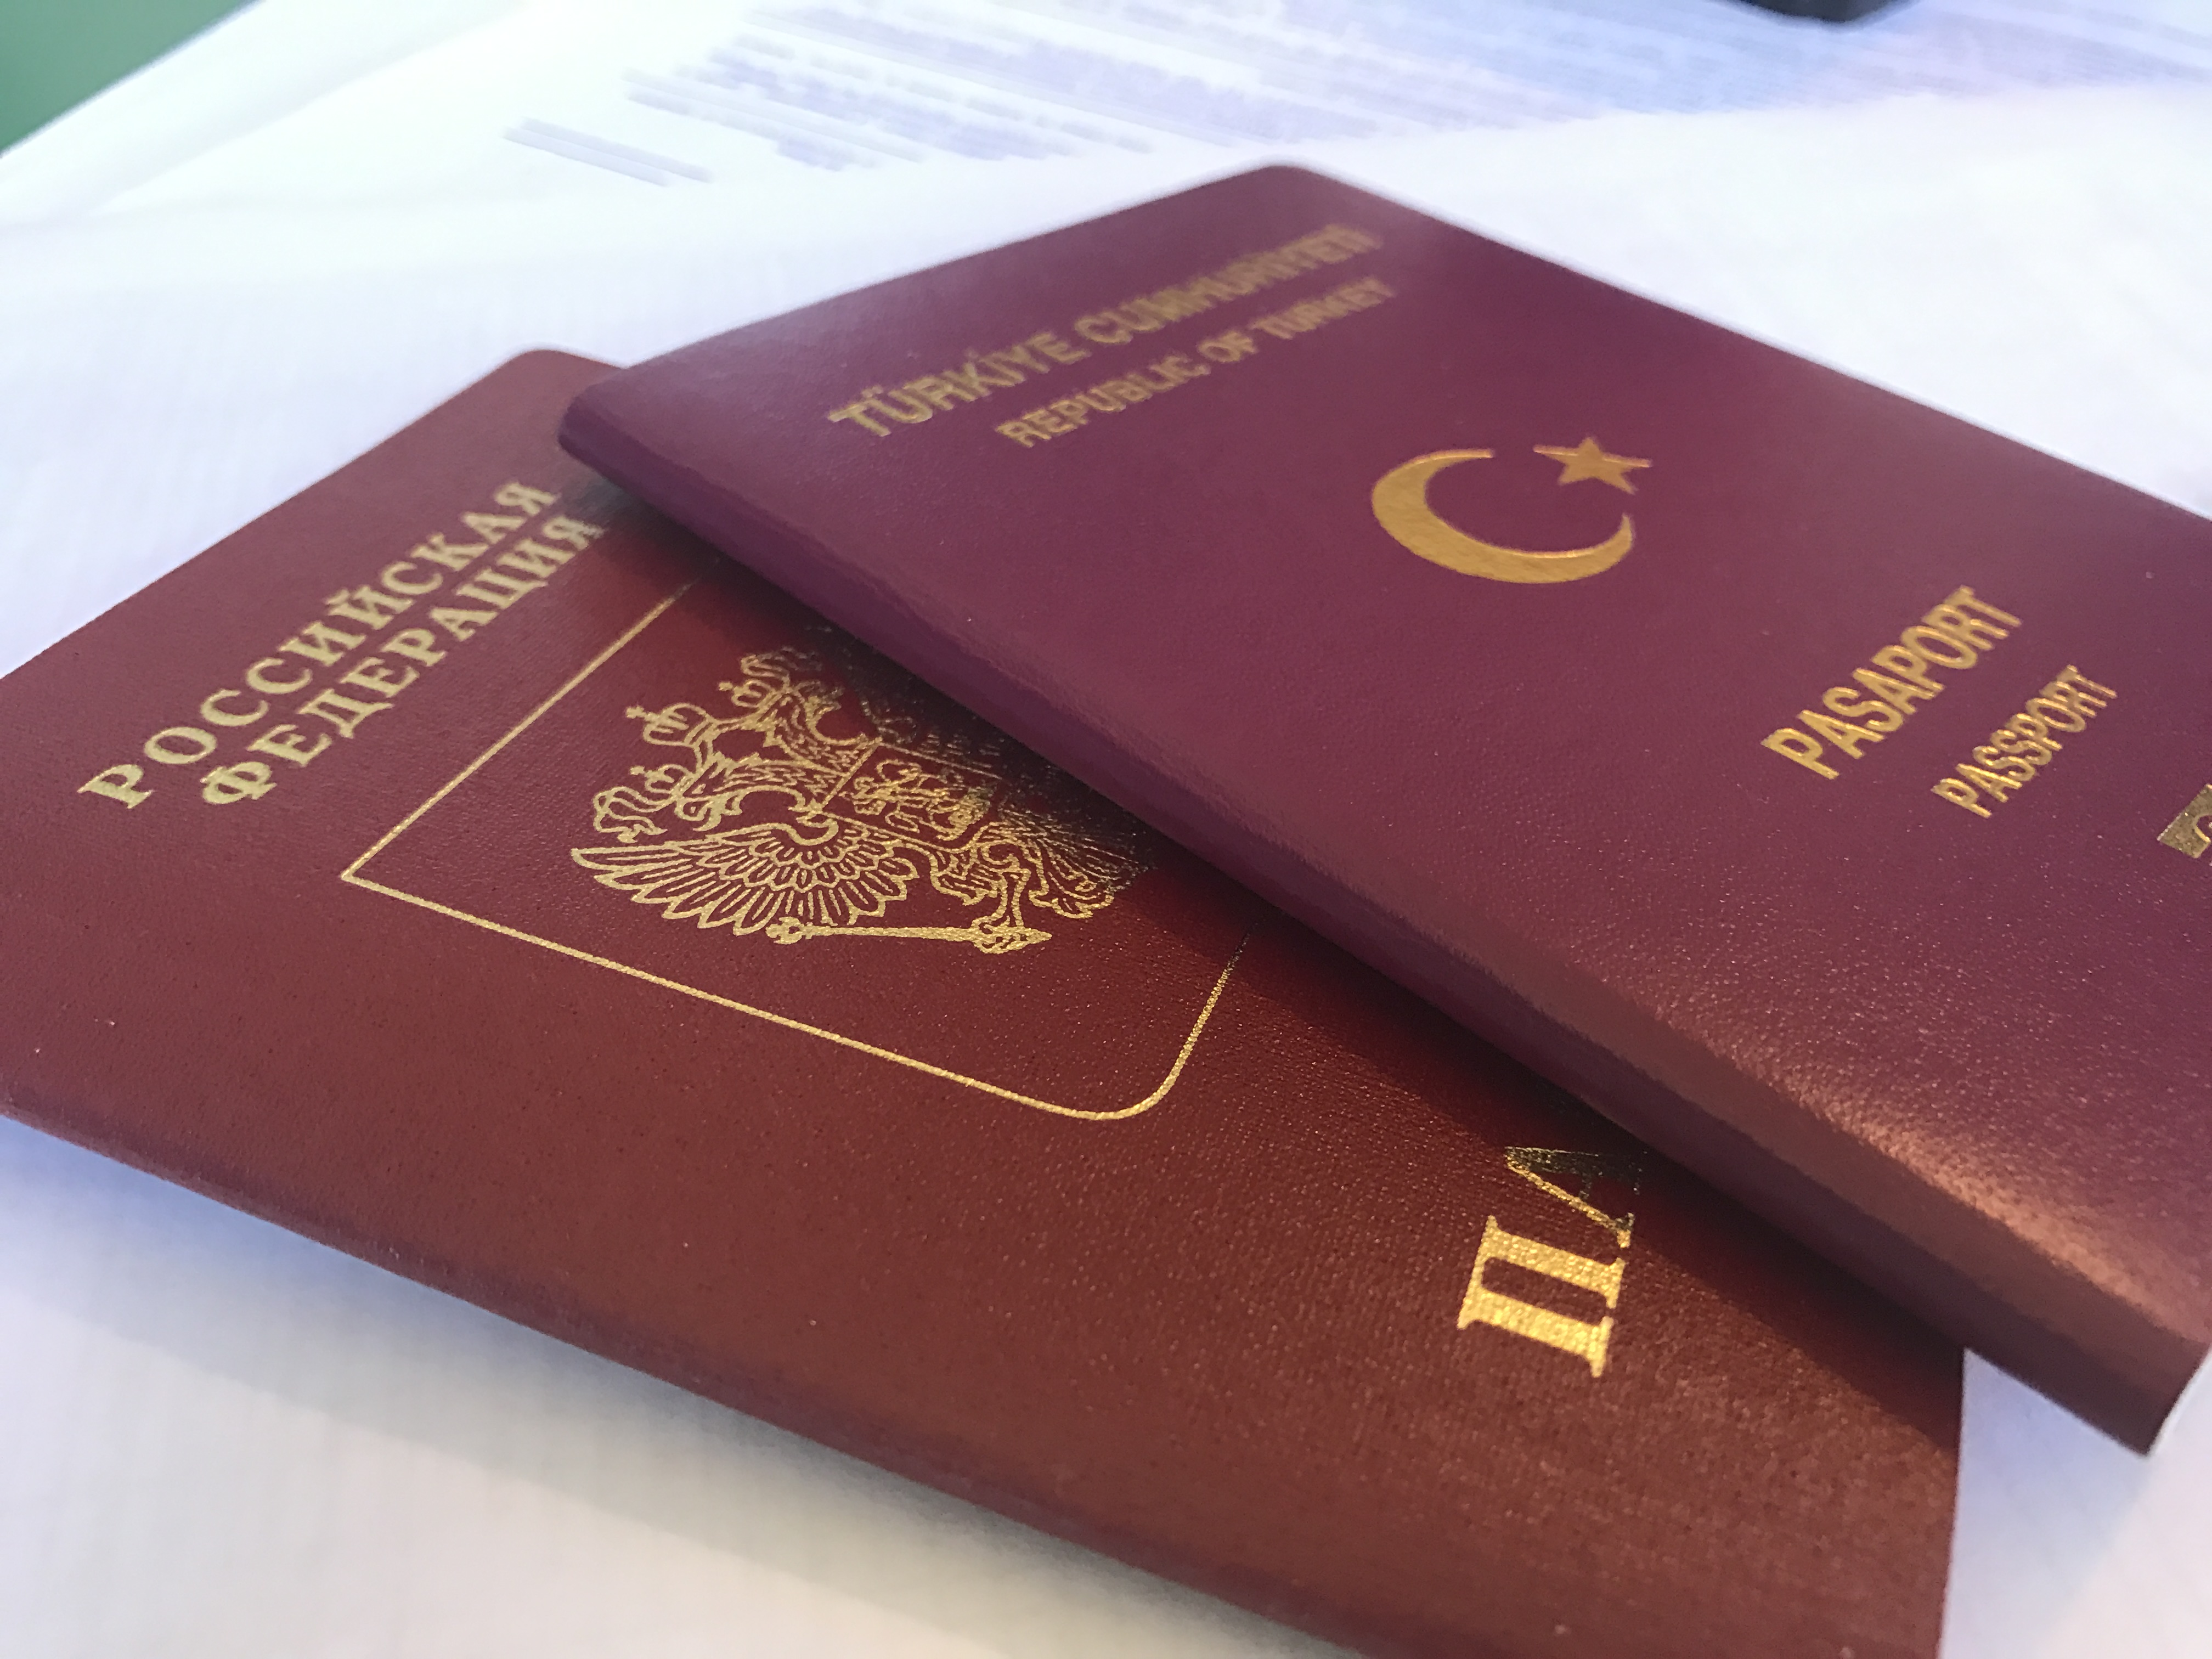 Процесс получения нового паспорта через консульство после смены фамилии по замужеству